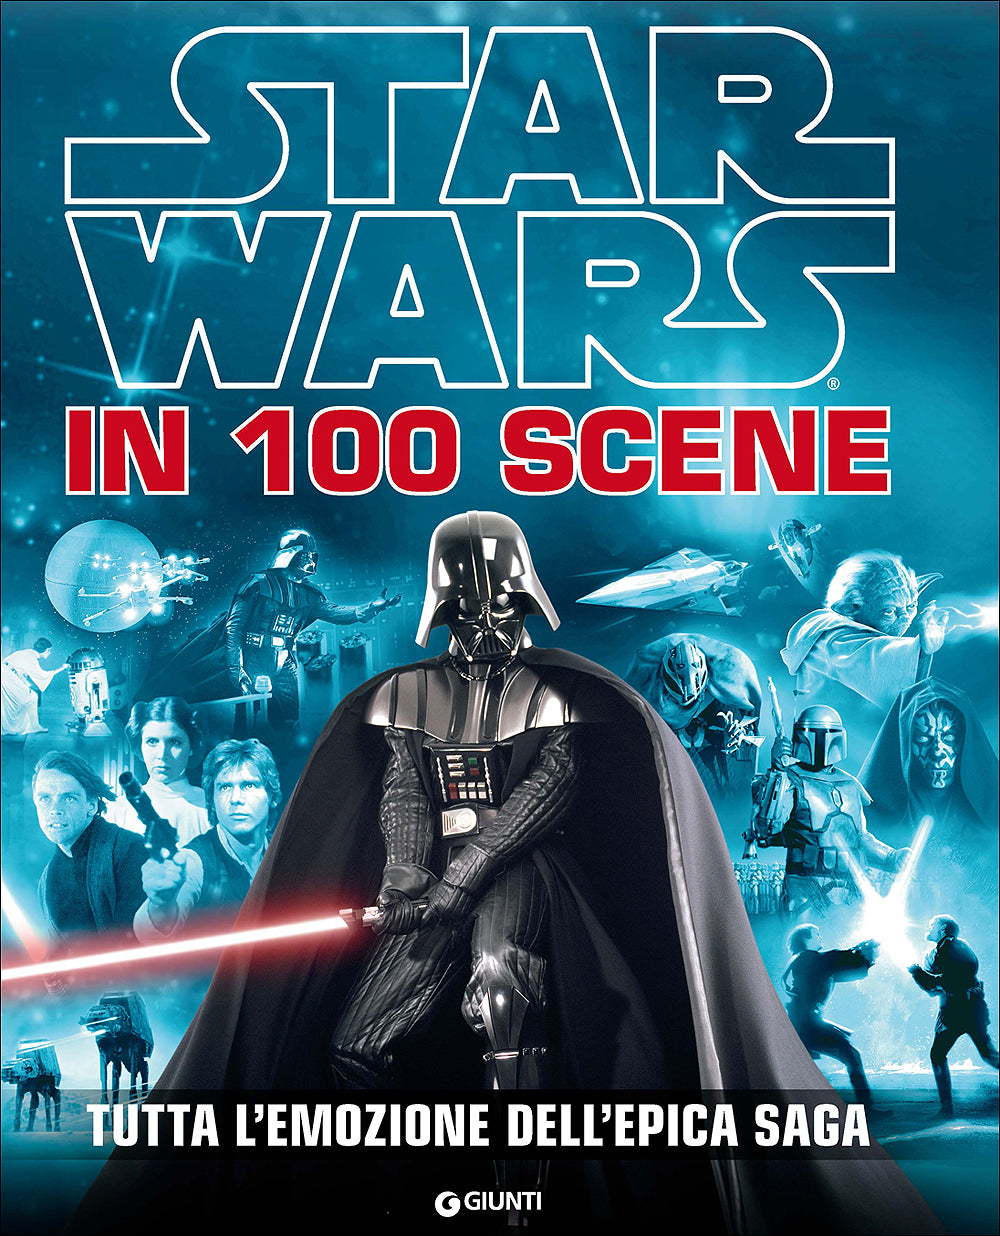 Star Wars in 100 scene::Tutta l'emozione dell'epica saga